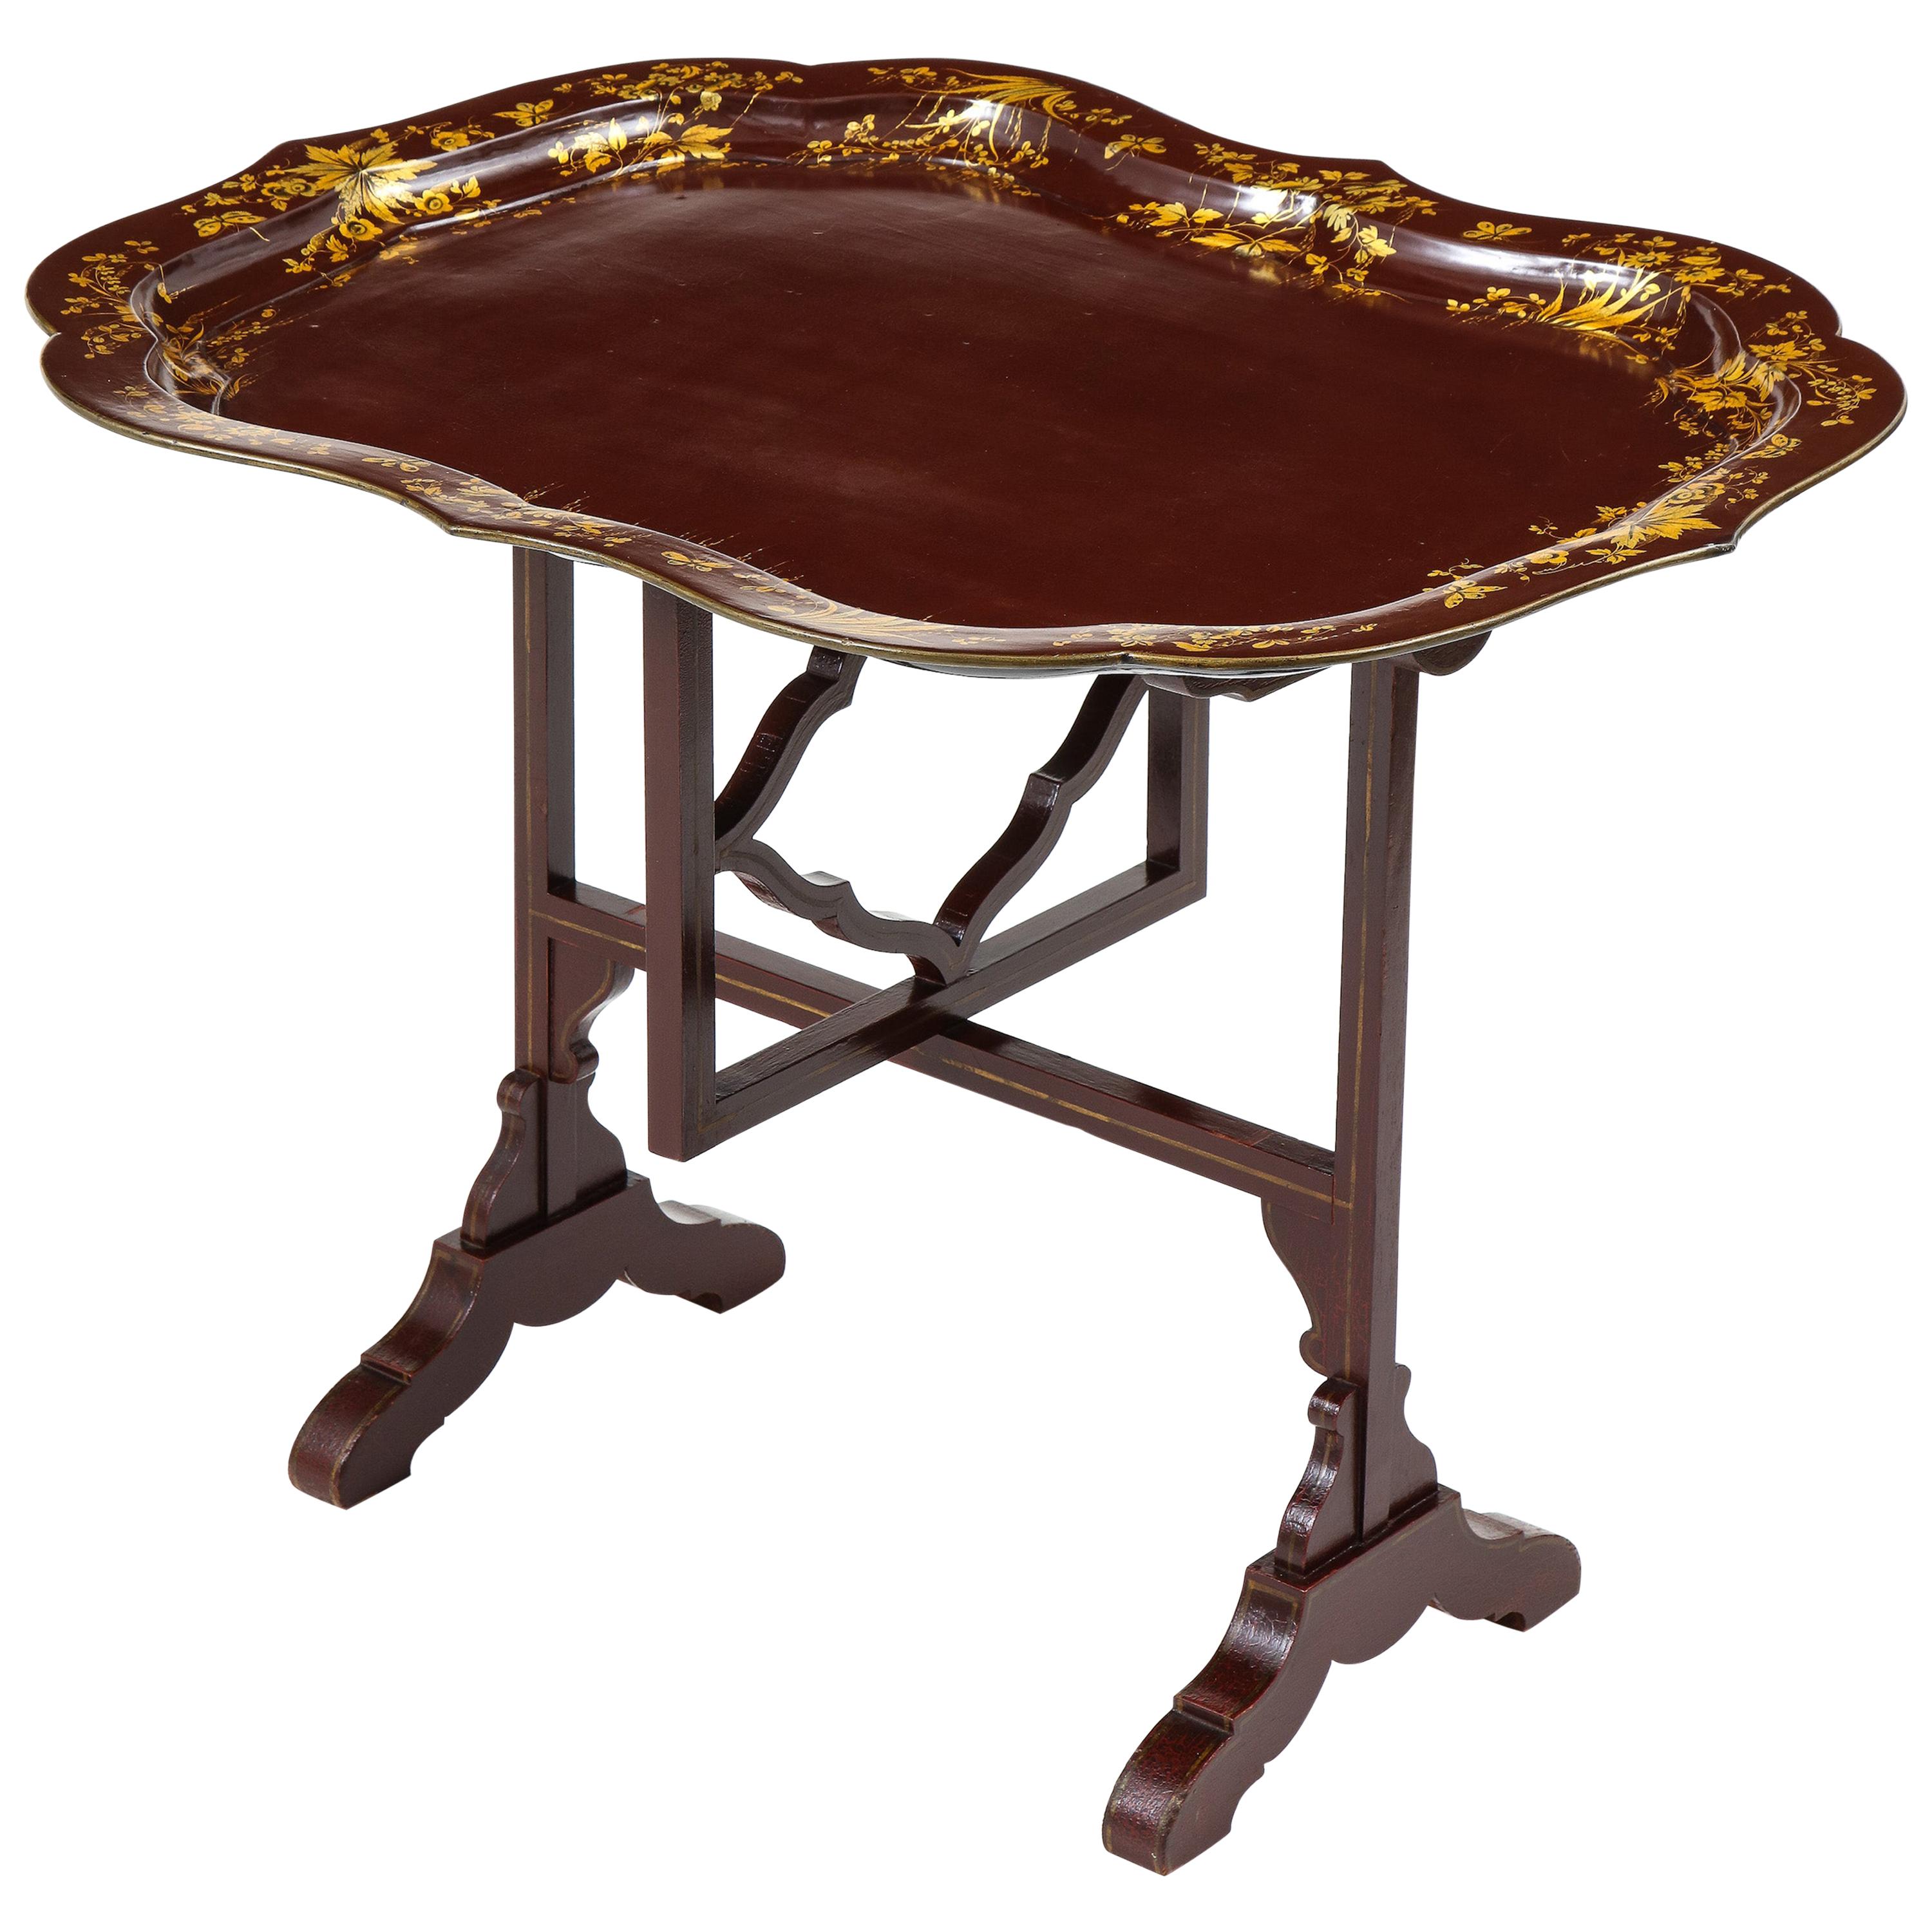 Tabletttisch aus Aubergine-Lack im Regency-Stil